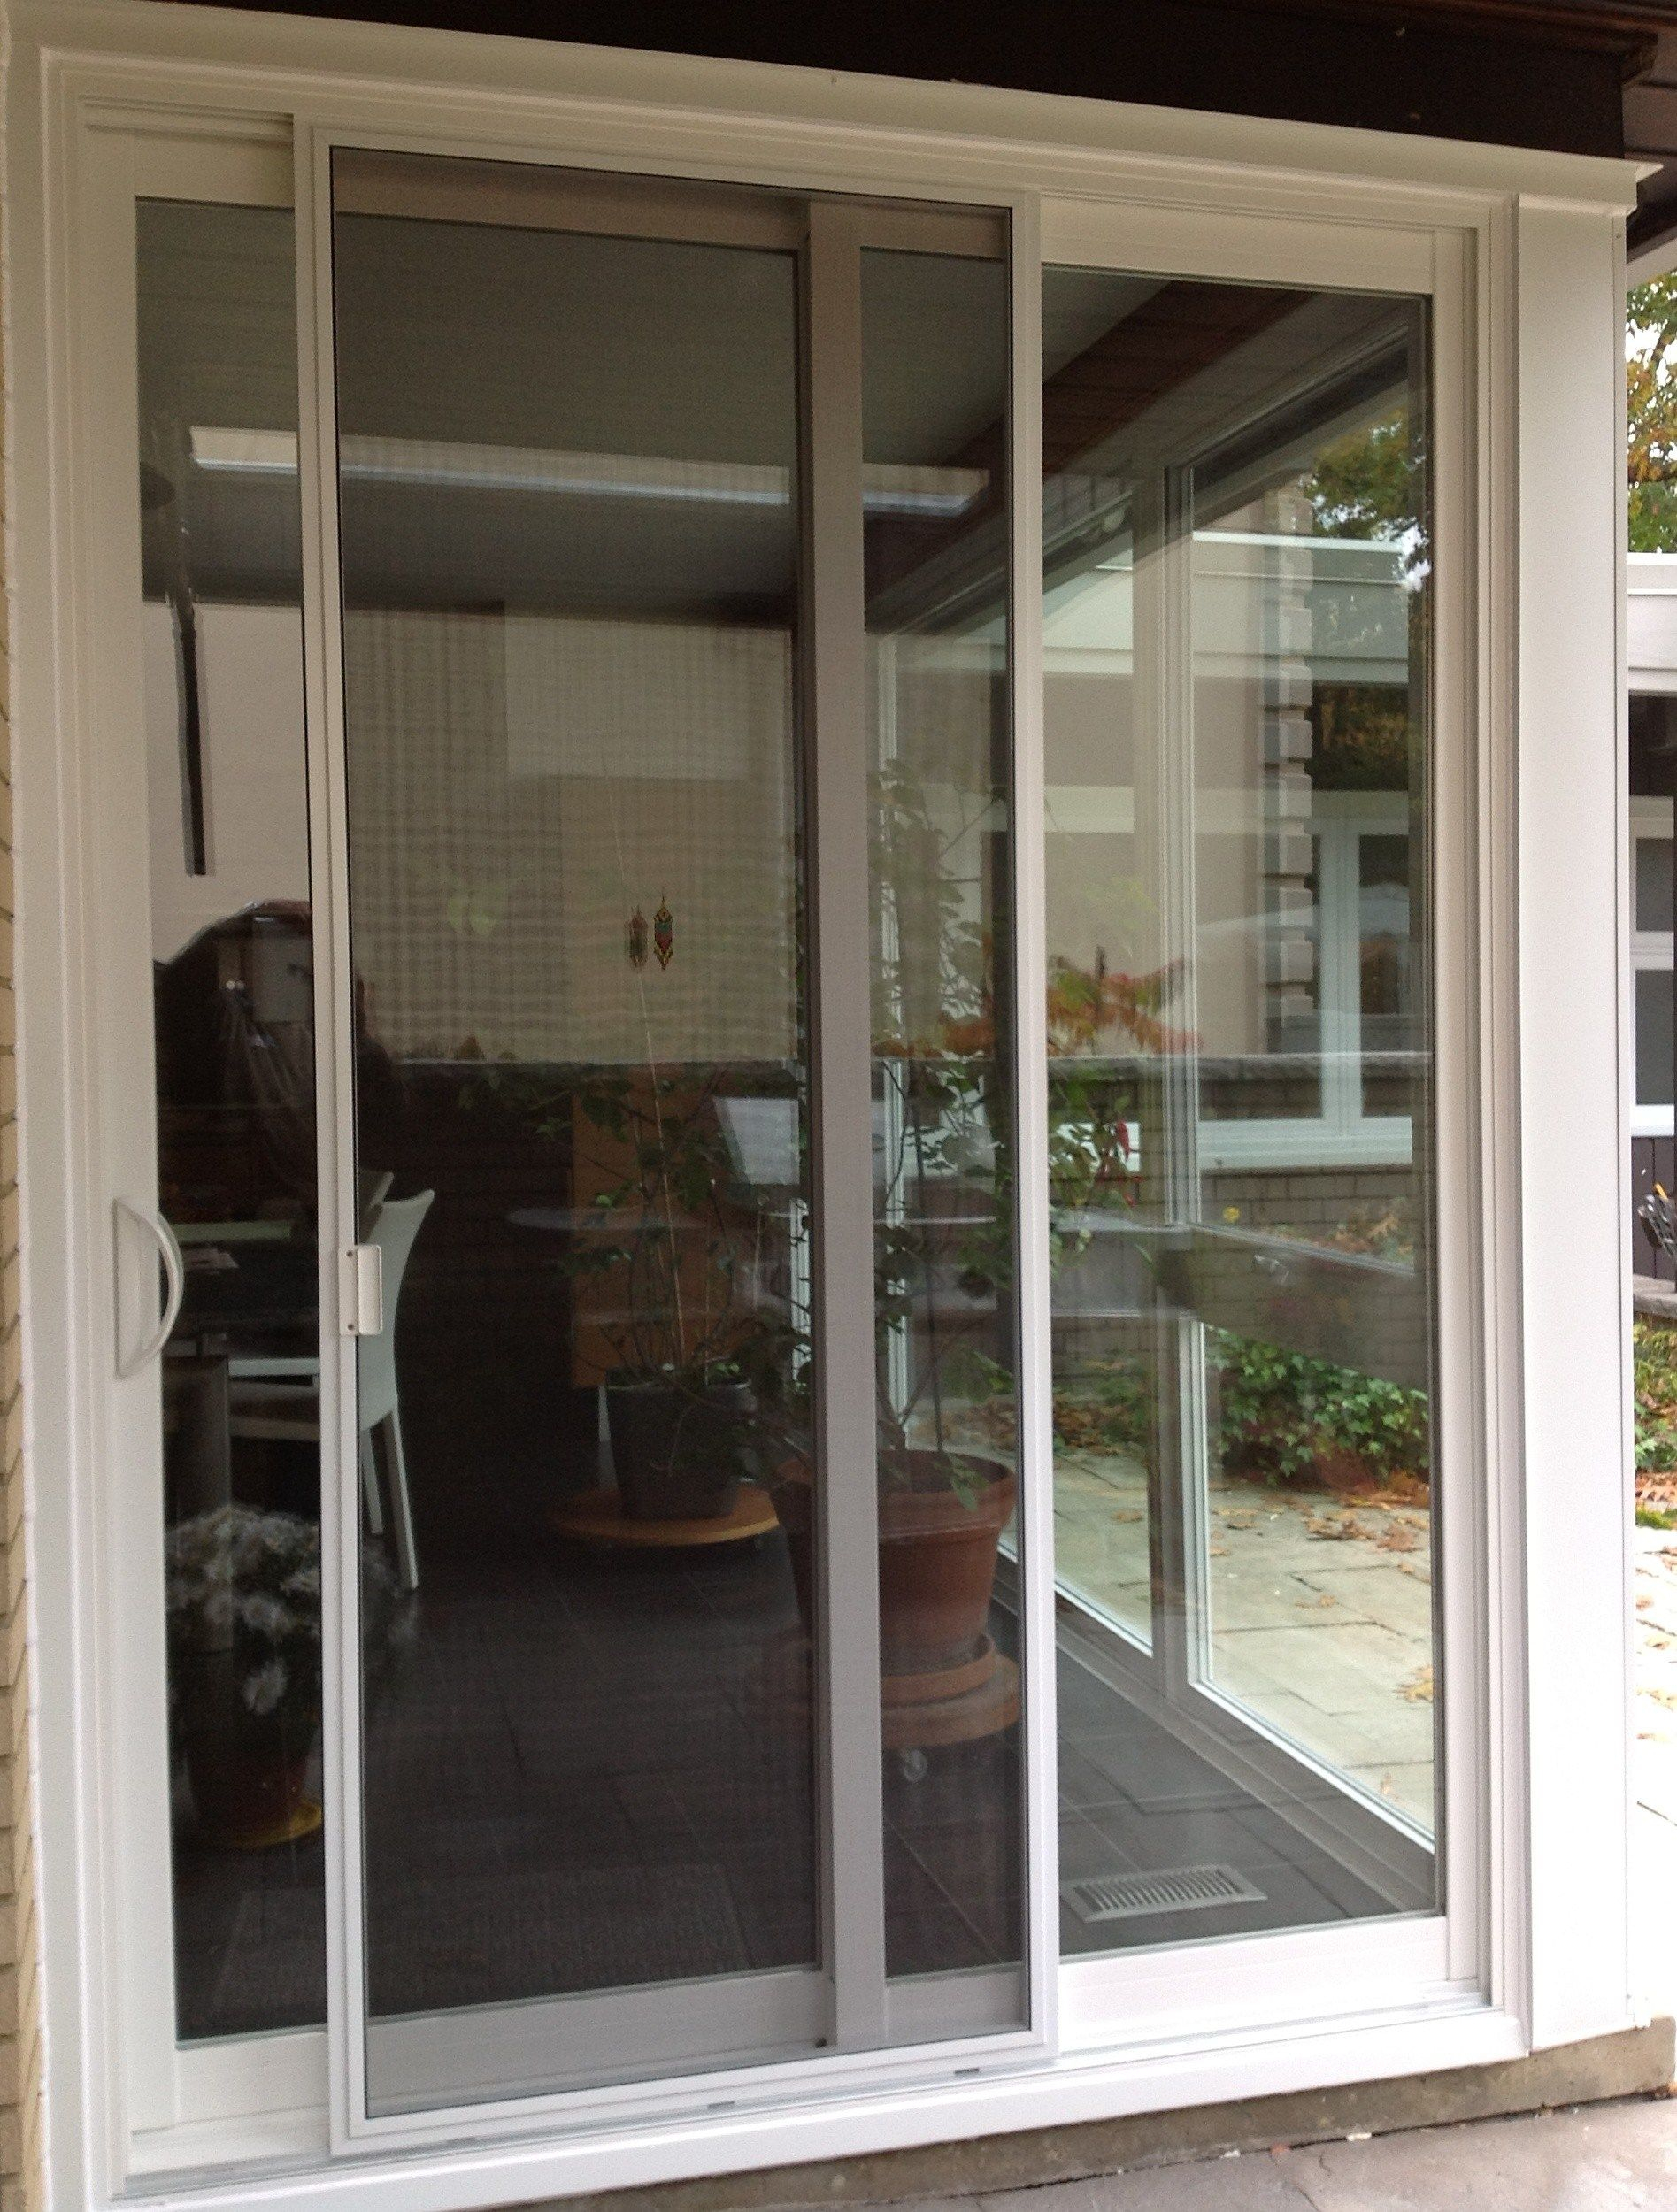 Best Of Door Handles For Sliding Glass Doors Home Decor in size 1895 X 2500